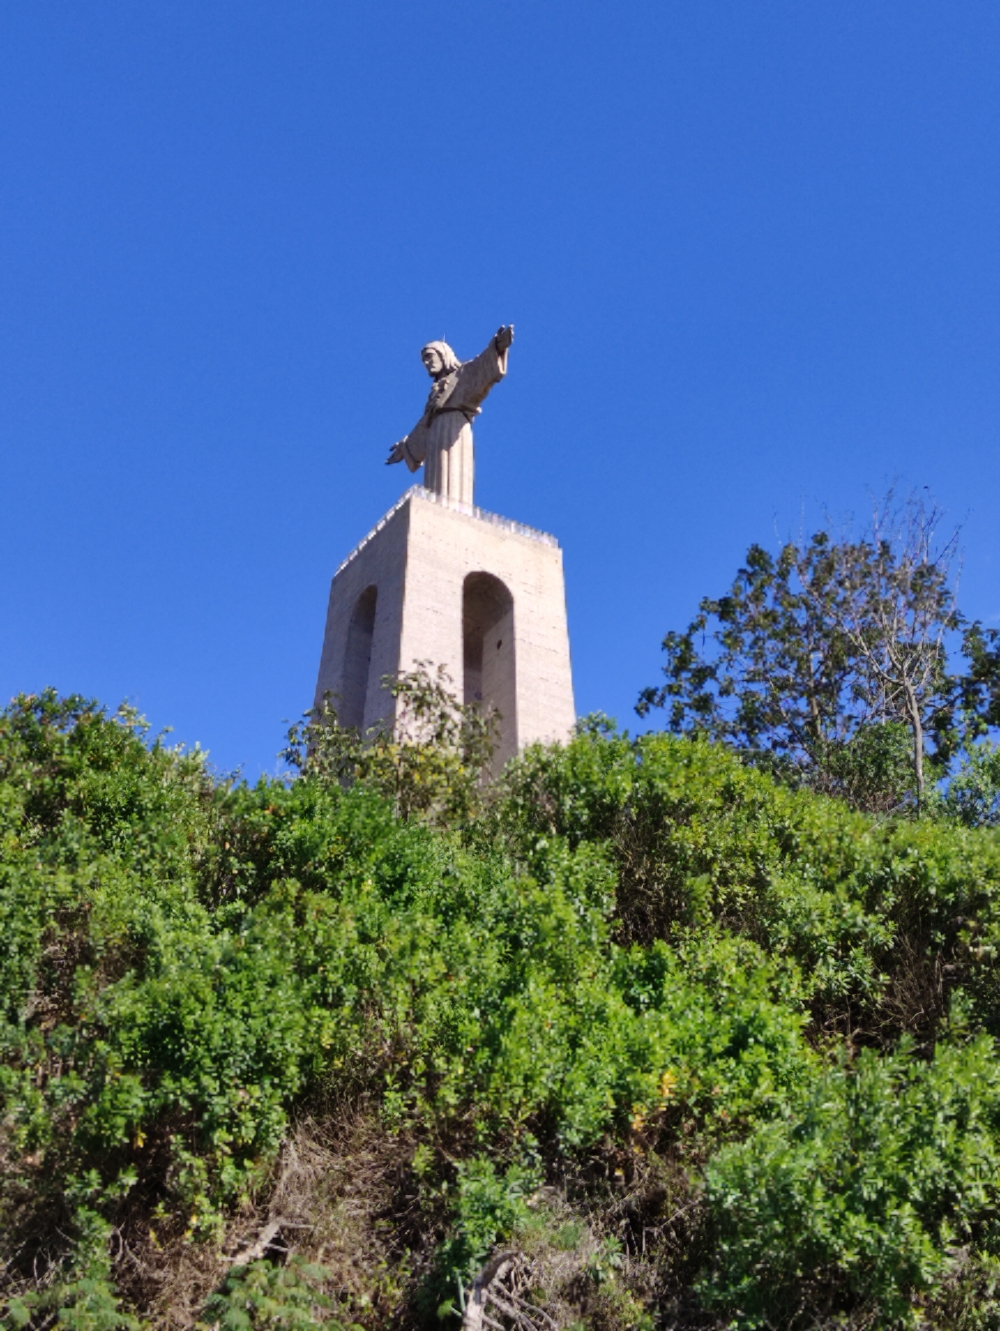 Die Christusstatue von Lissabon (Christo Rei)